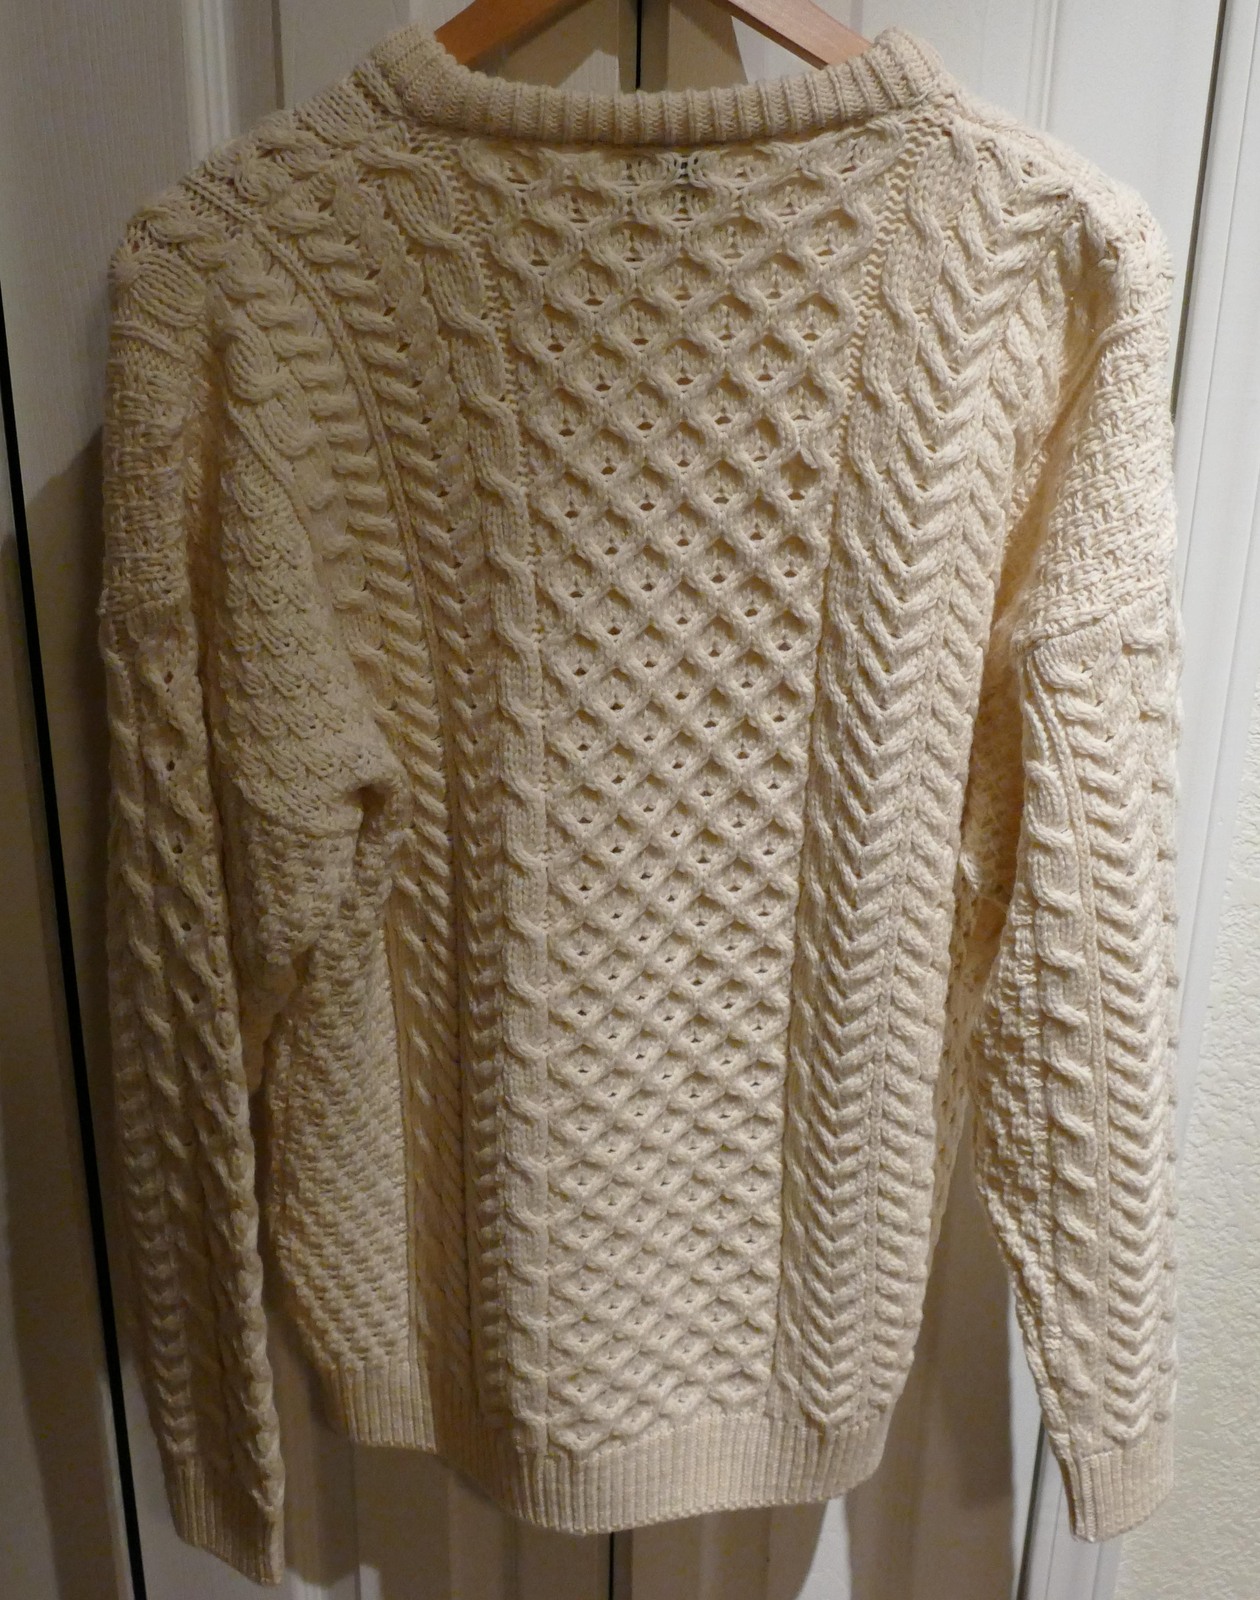 Aran Isles Knitwear Made in Ireland 100% Merino Wool Sweater Beautiful ...